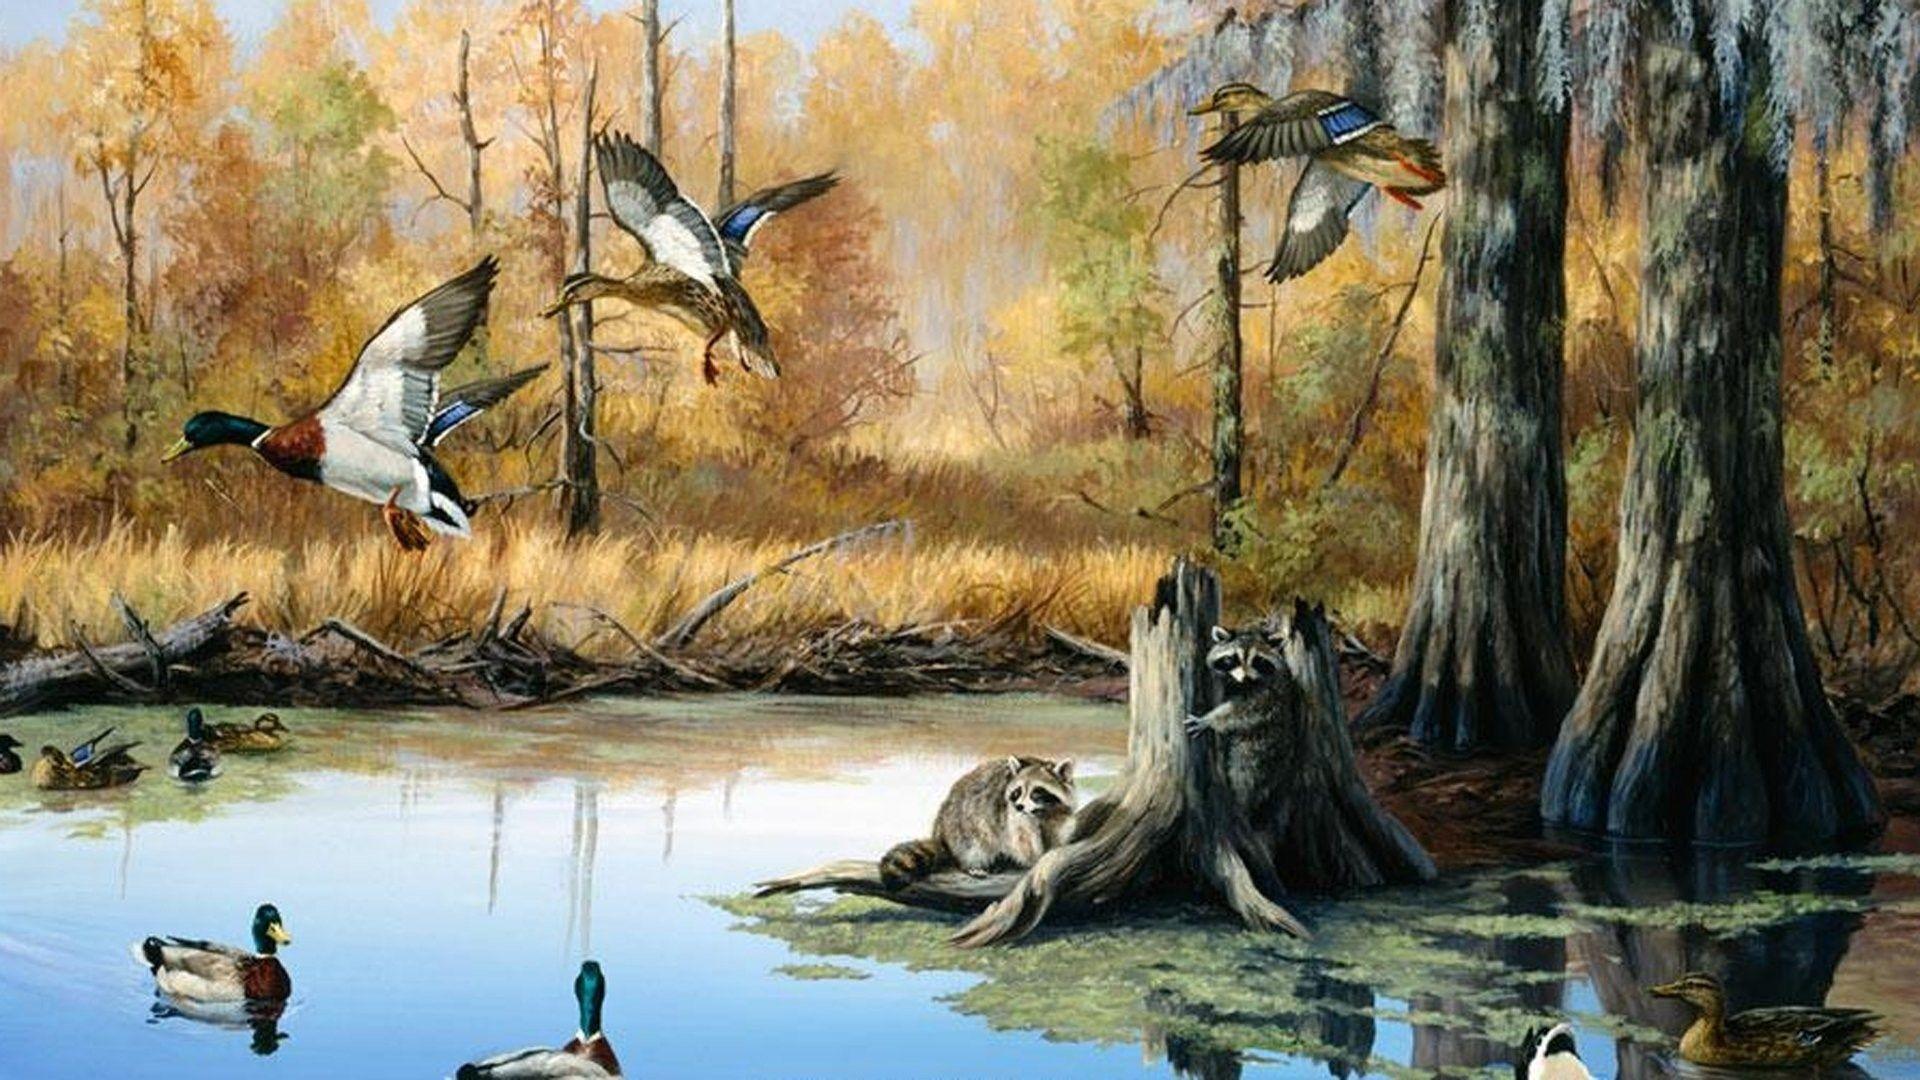 Duck Hunting Desktop Wallpapers - Top